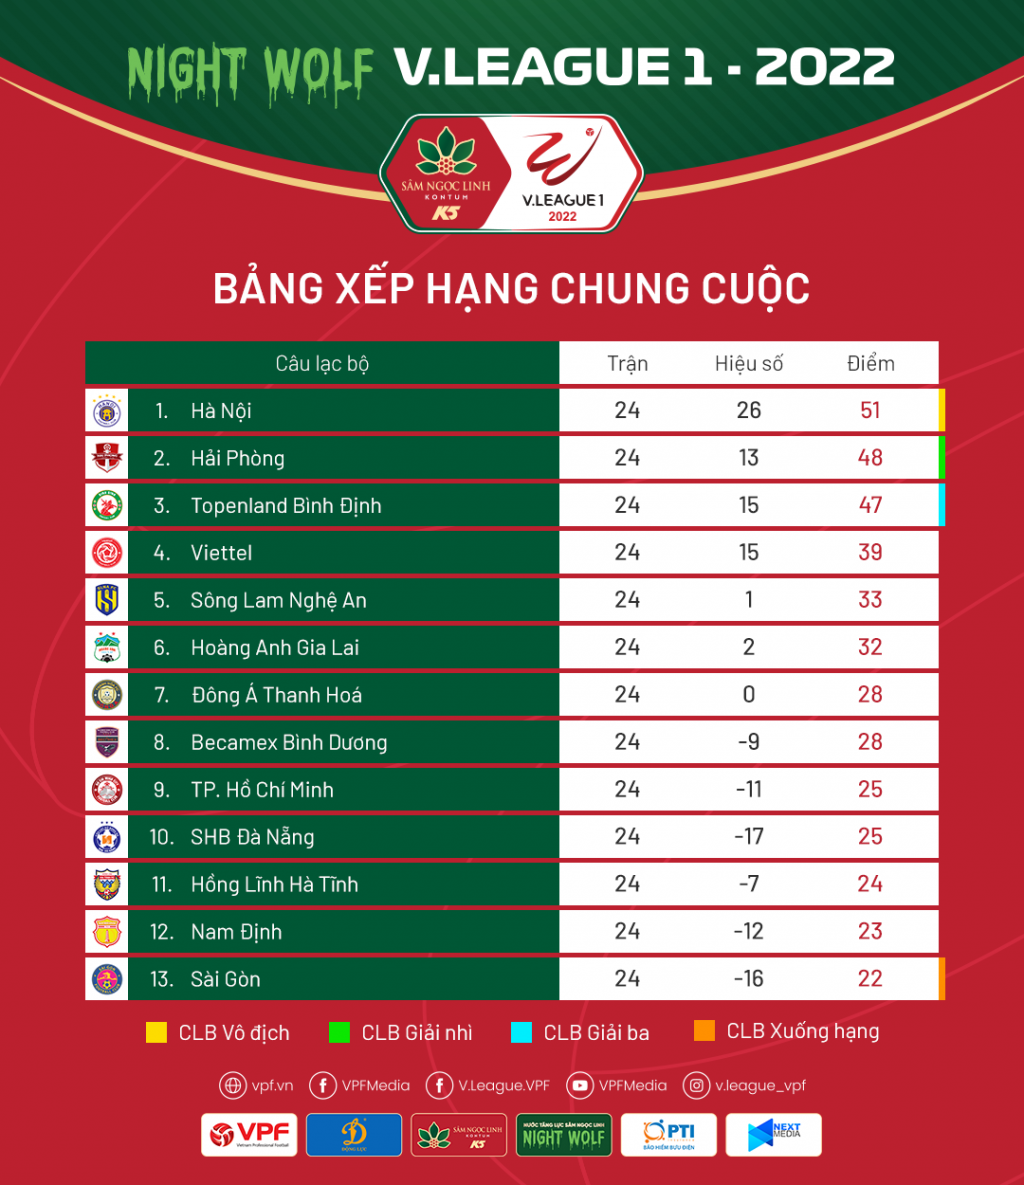 Bảng xếp hạng V-League mùa giải 2022: Hà Nội vô địch, Sài Gòn chính thức xuống hạng